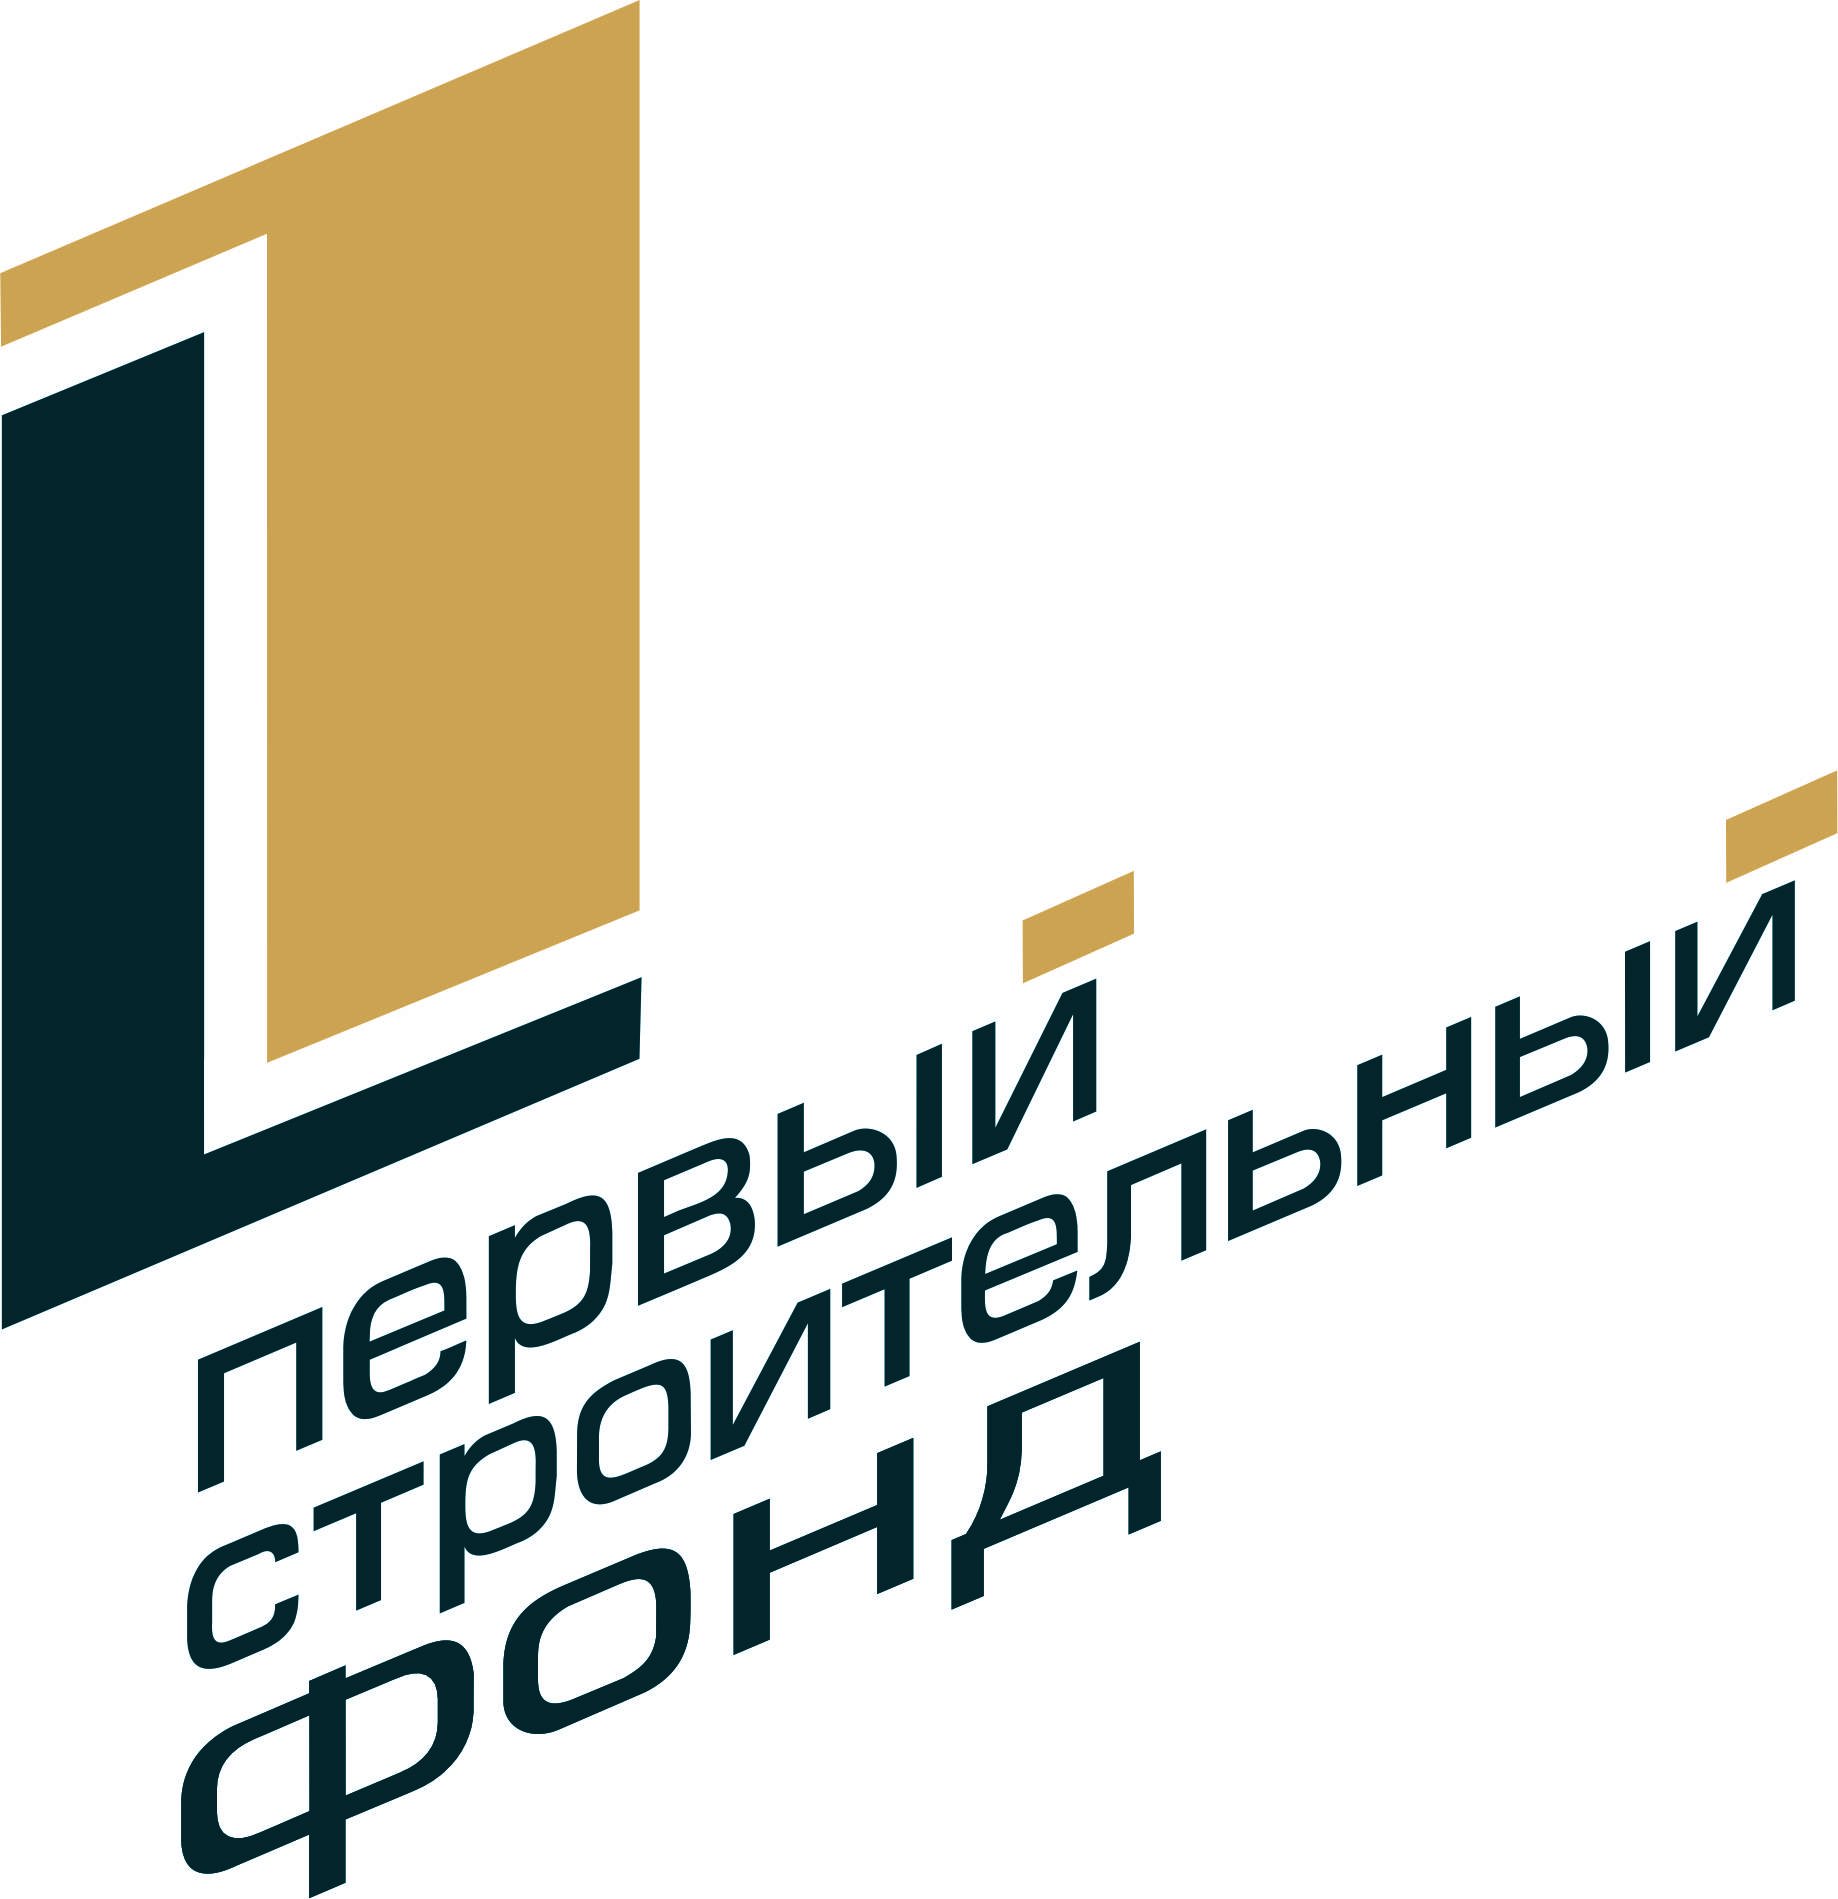 Сайт первого строительного фонда. Первый строительный фонд логотип. Застройщики Новосибирска логотипы. Логотип строительной компании.